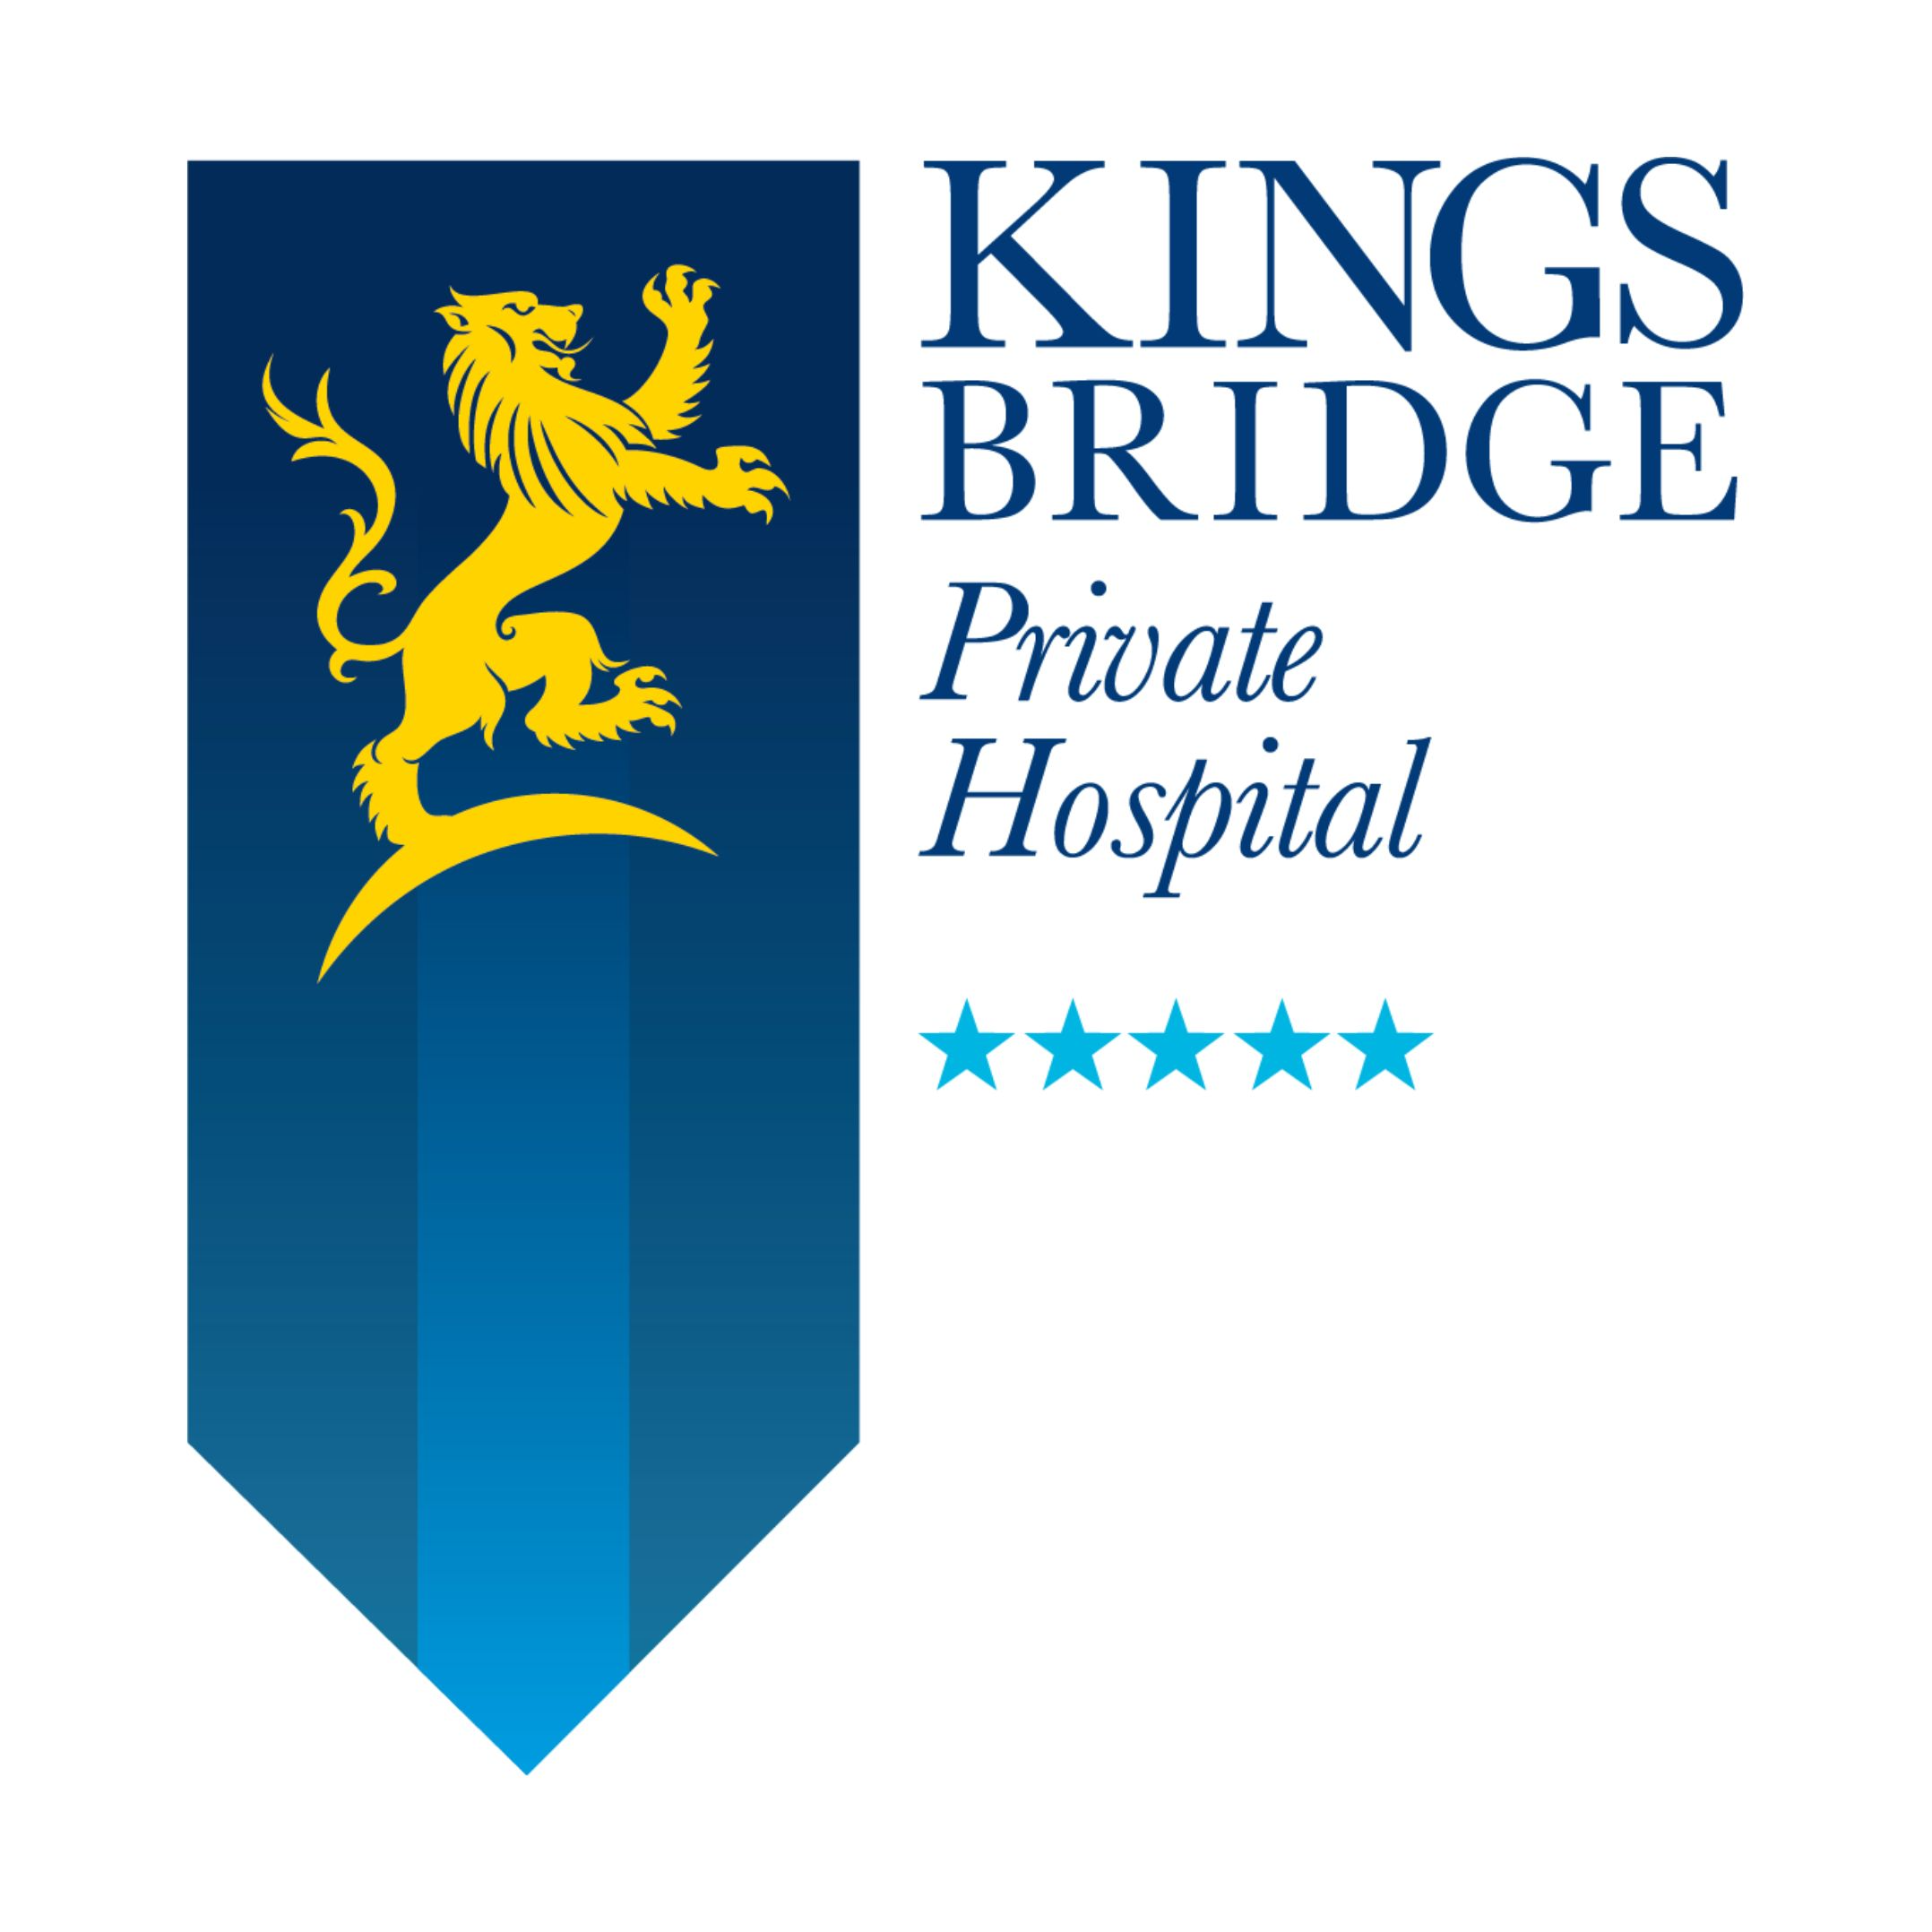 Kingsbridge Private Hospital Belfast